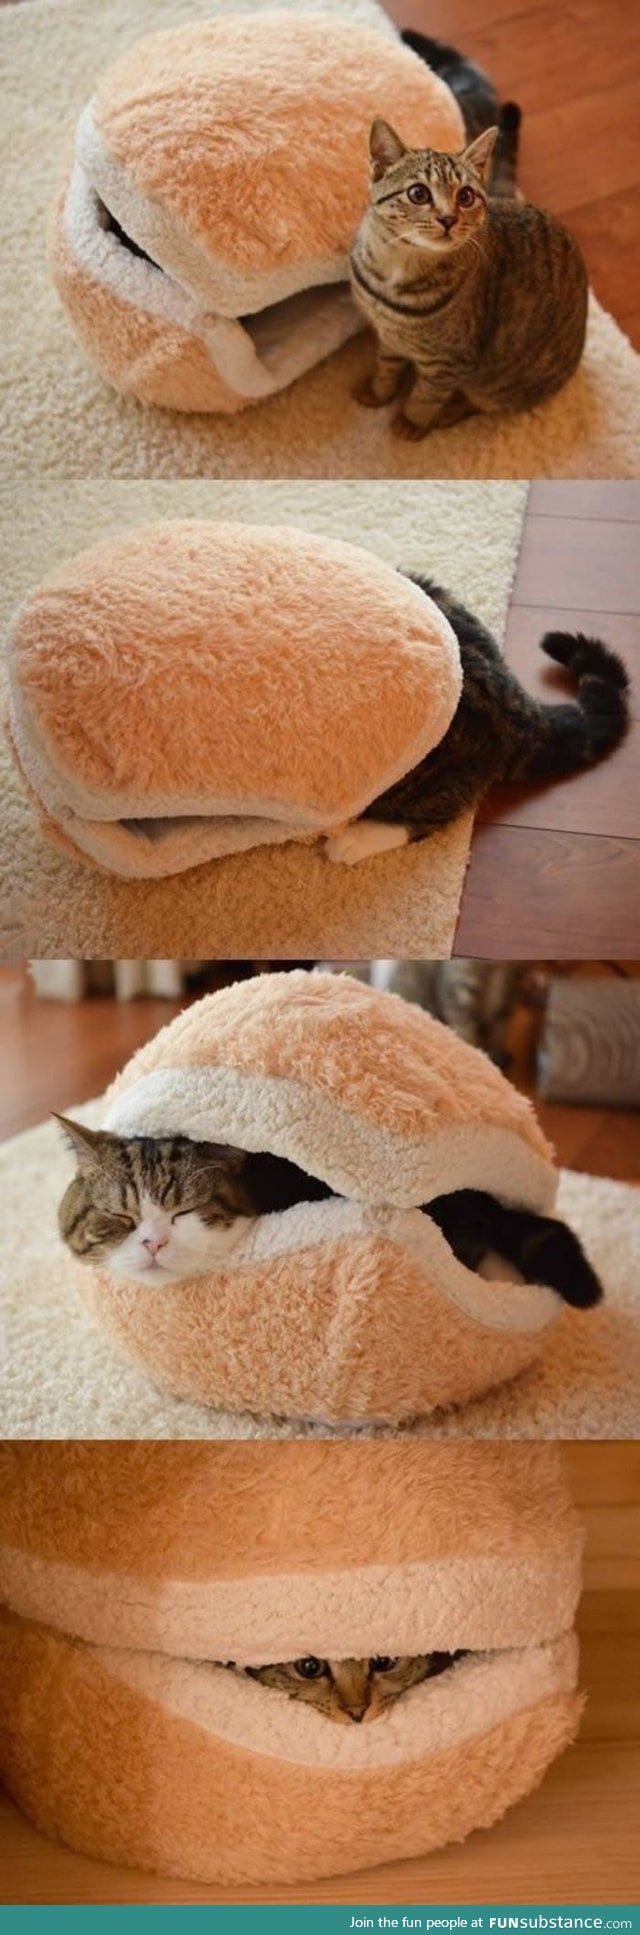 Cat in a bun